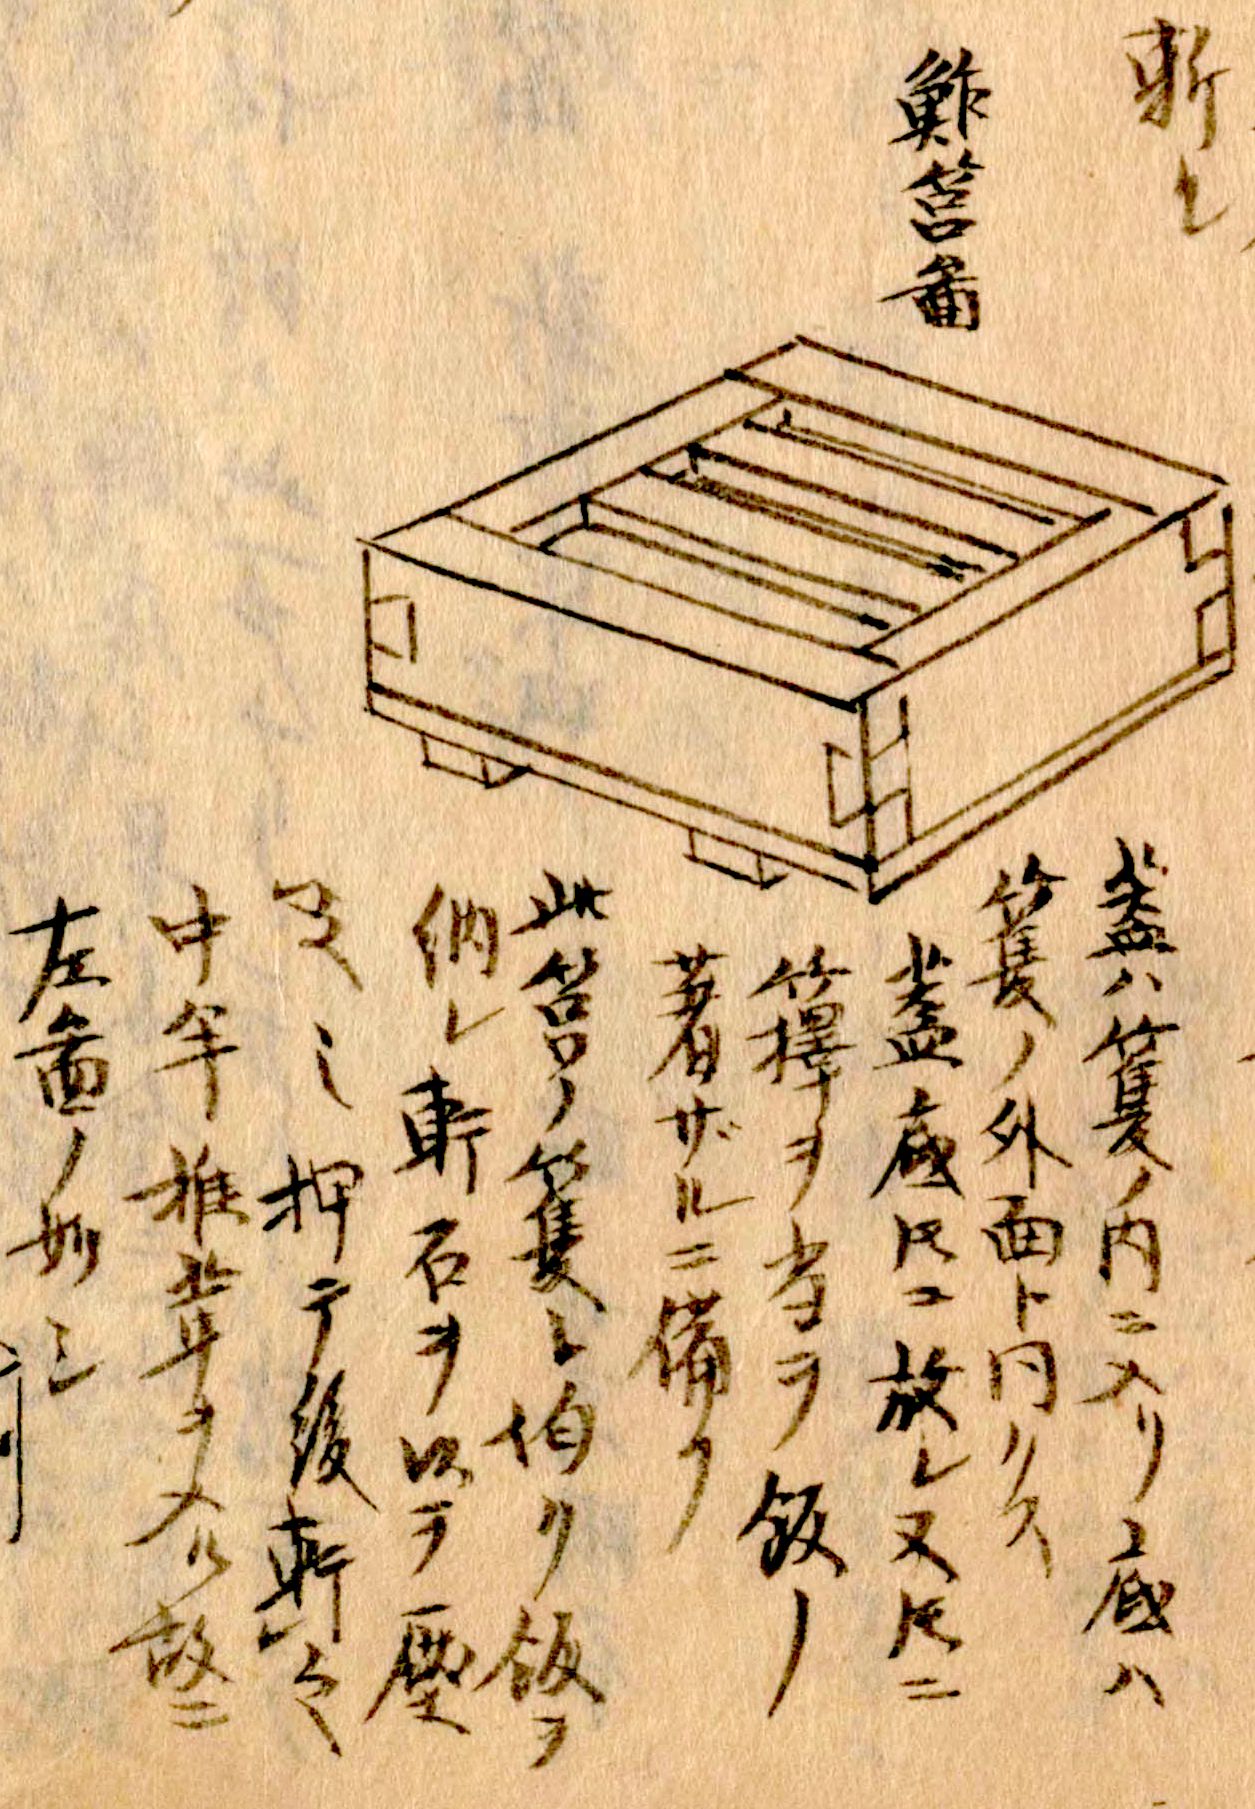 筥鮓图。在四方形的木制模具中铺上寿司饭，放上配料，盖上盖后用重石或手压紧成型。（《守贞漫稿》国立国会图书馆藏）。与现在依然在使用的模具外形基本一致。